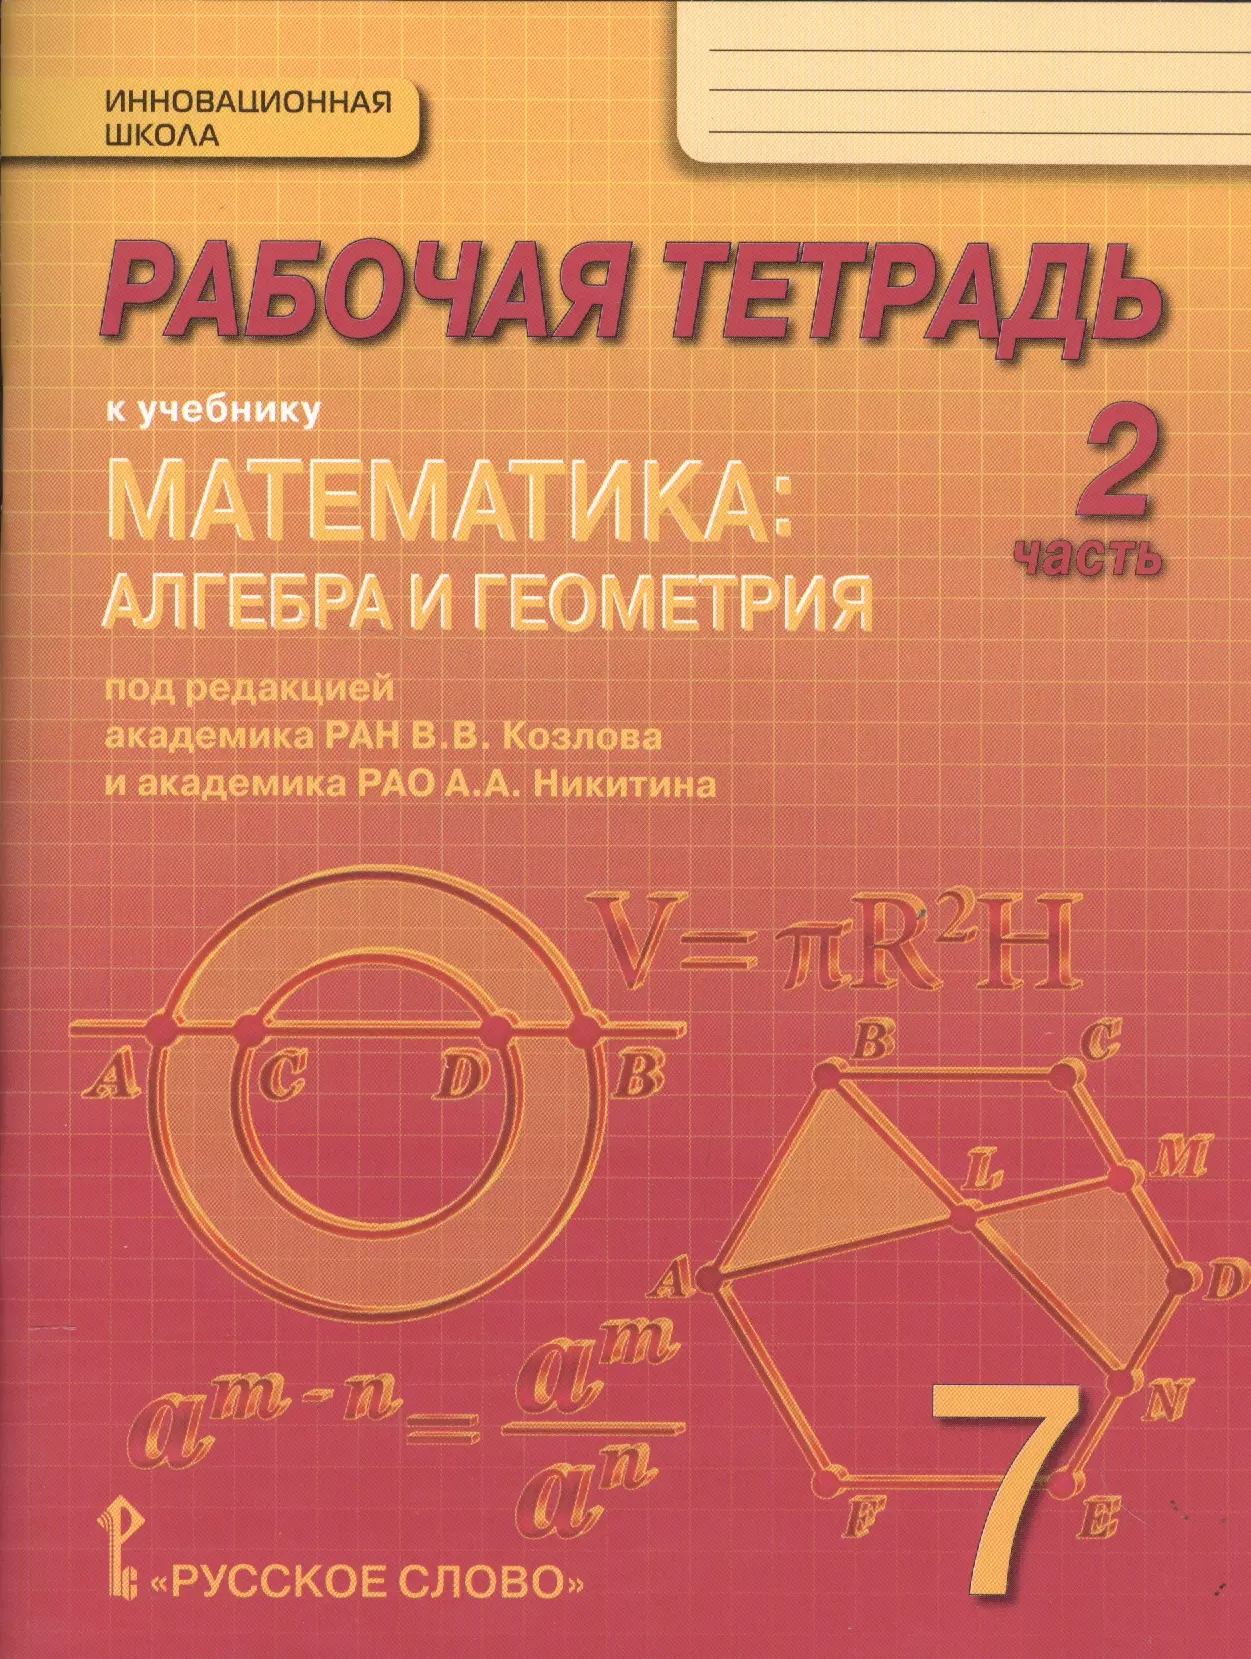 Рабочая тетрадь к учебнику Математика: алгебра и геометрия. 7 класс, 2 часть алгебра 8 класс рабочая тетрадь в двух частях часть 1 часть 2 комплект из 2 книг